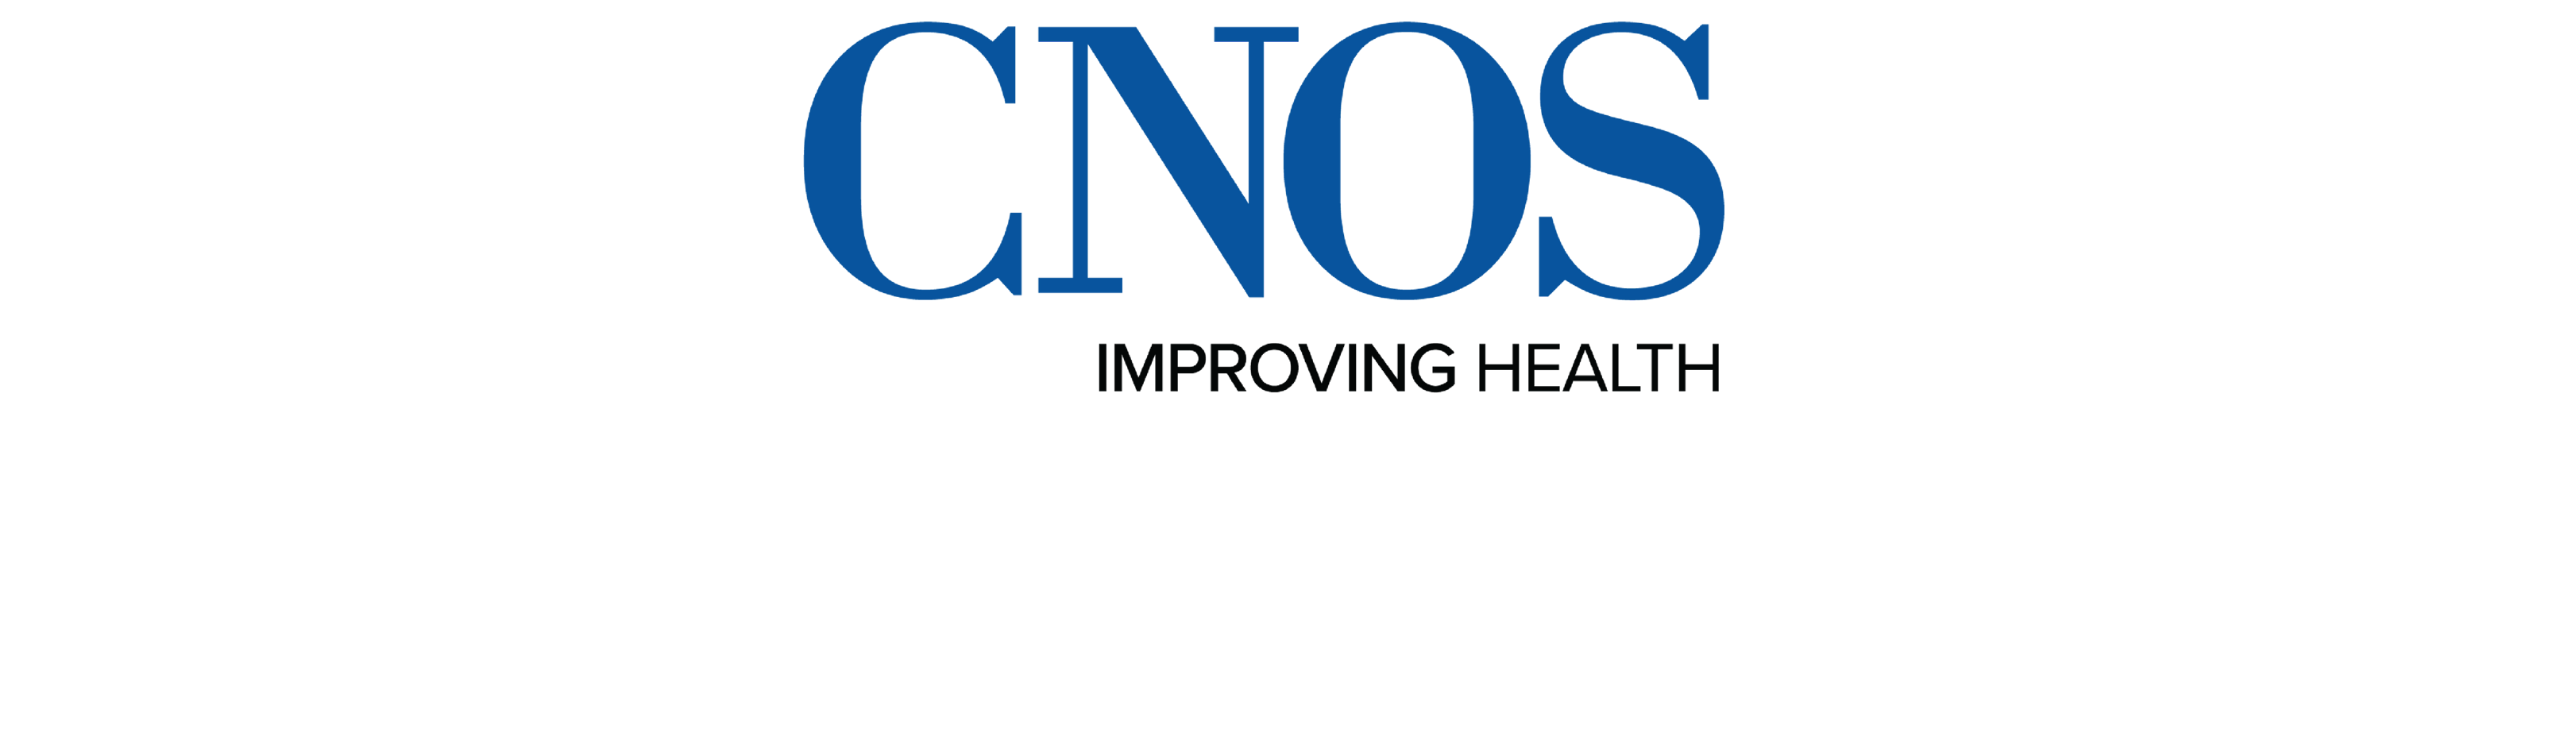 CNOS_Logo_for_Website